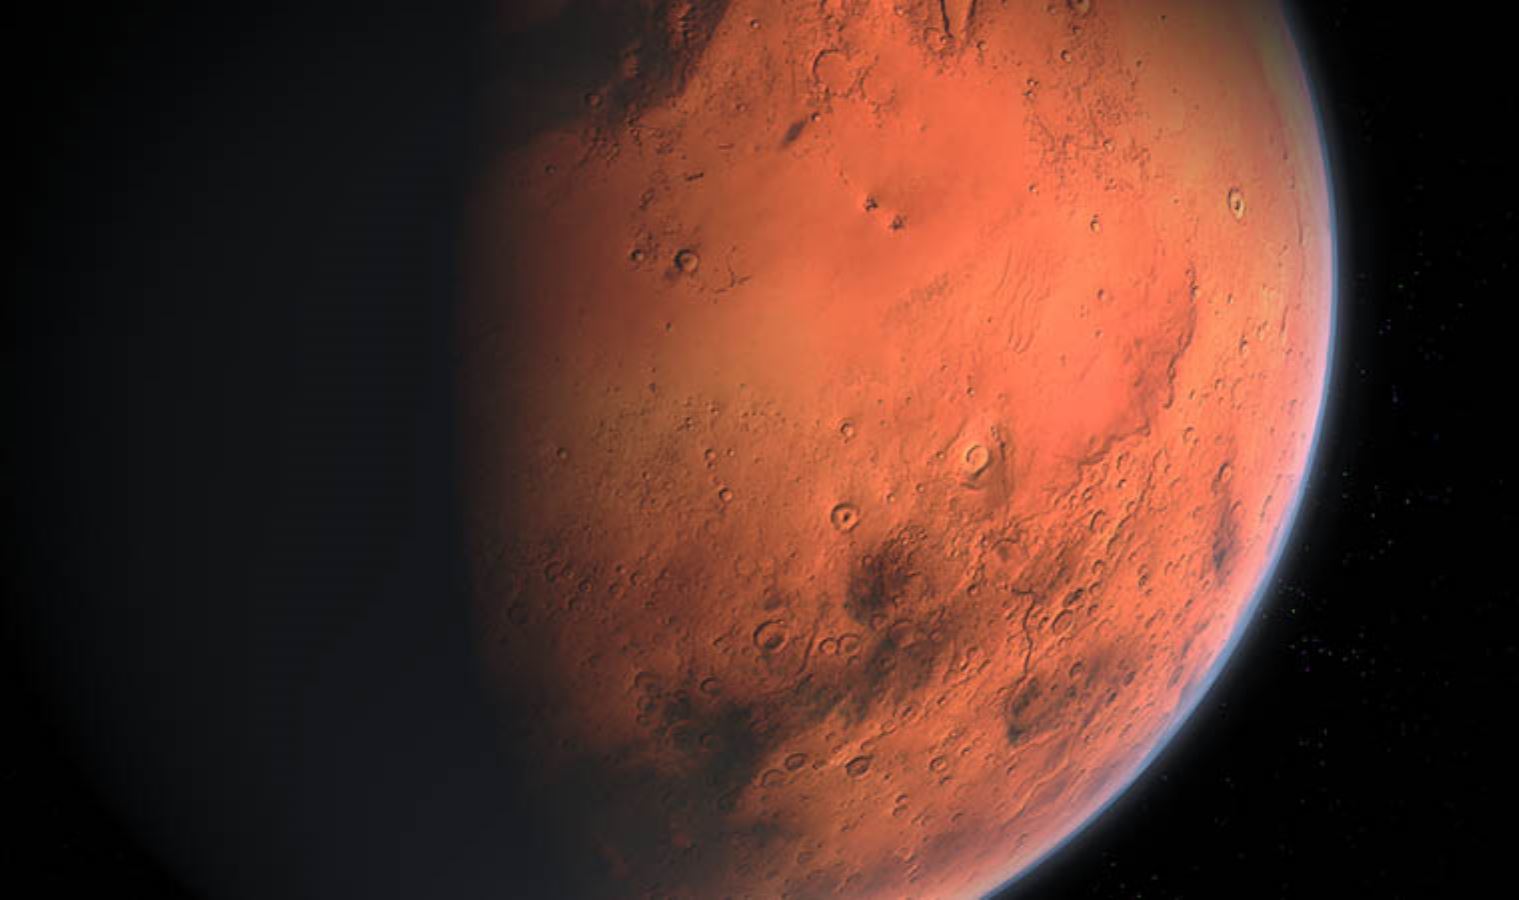 Mars'ın kolonileştirilmesi için önemli bir adım; malzeme keşfi